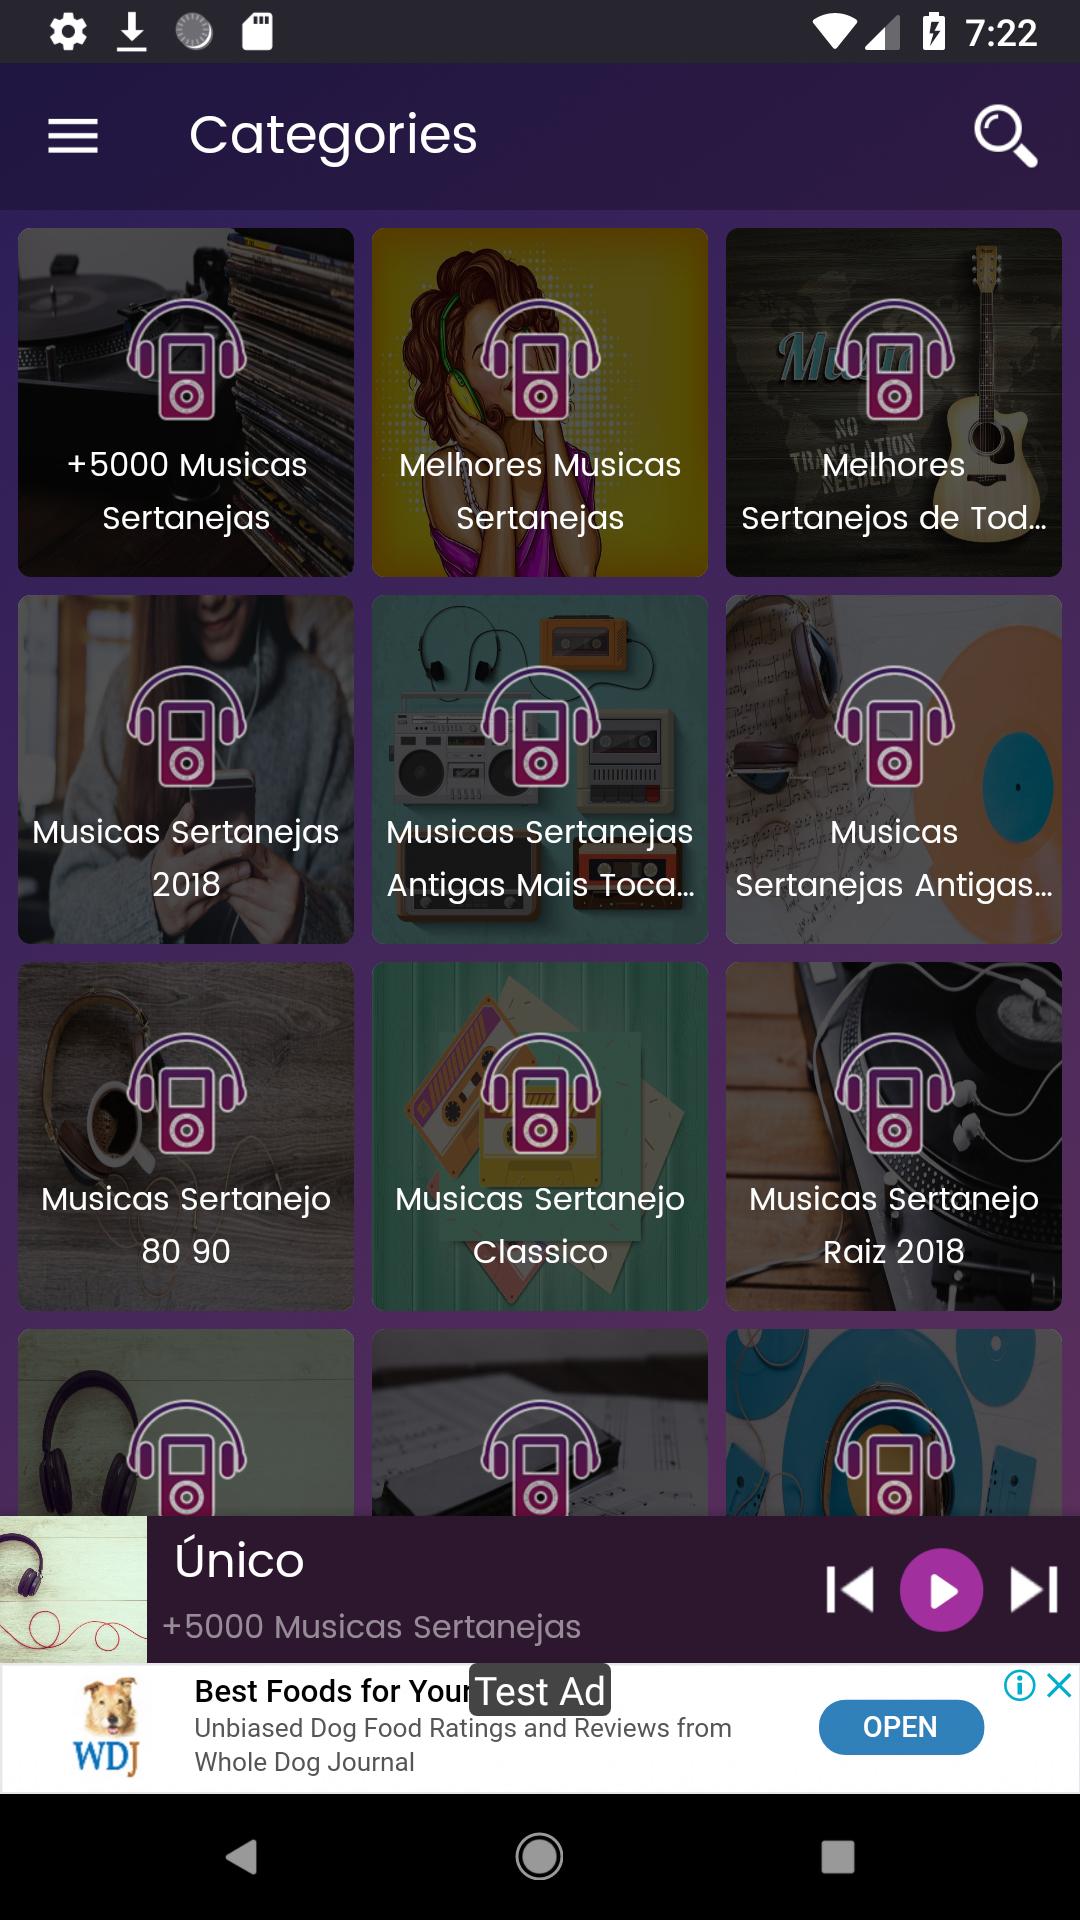 Músicas Sertanejas As Melhores Lançamentos for Android - APK Download